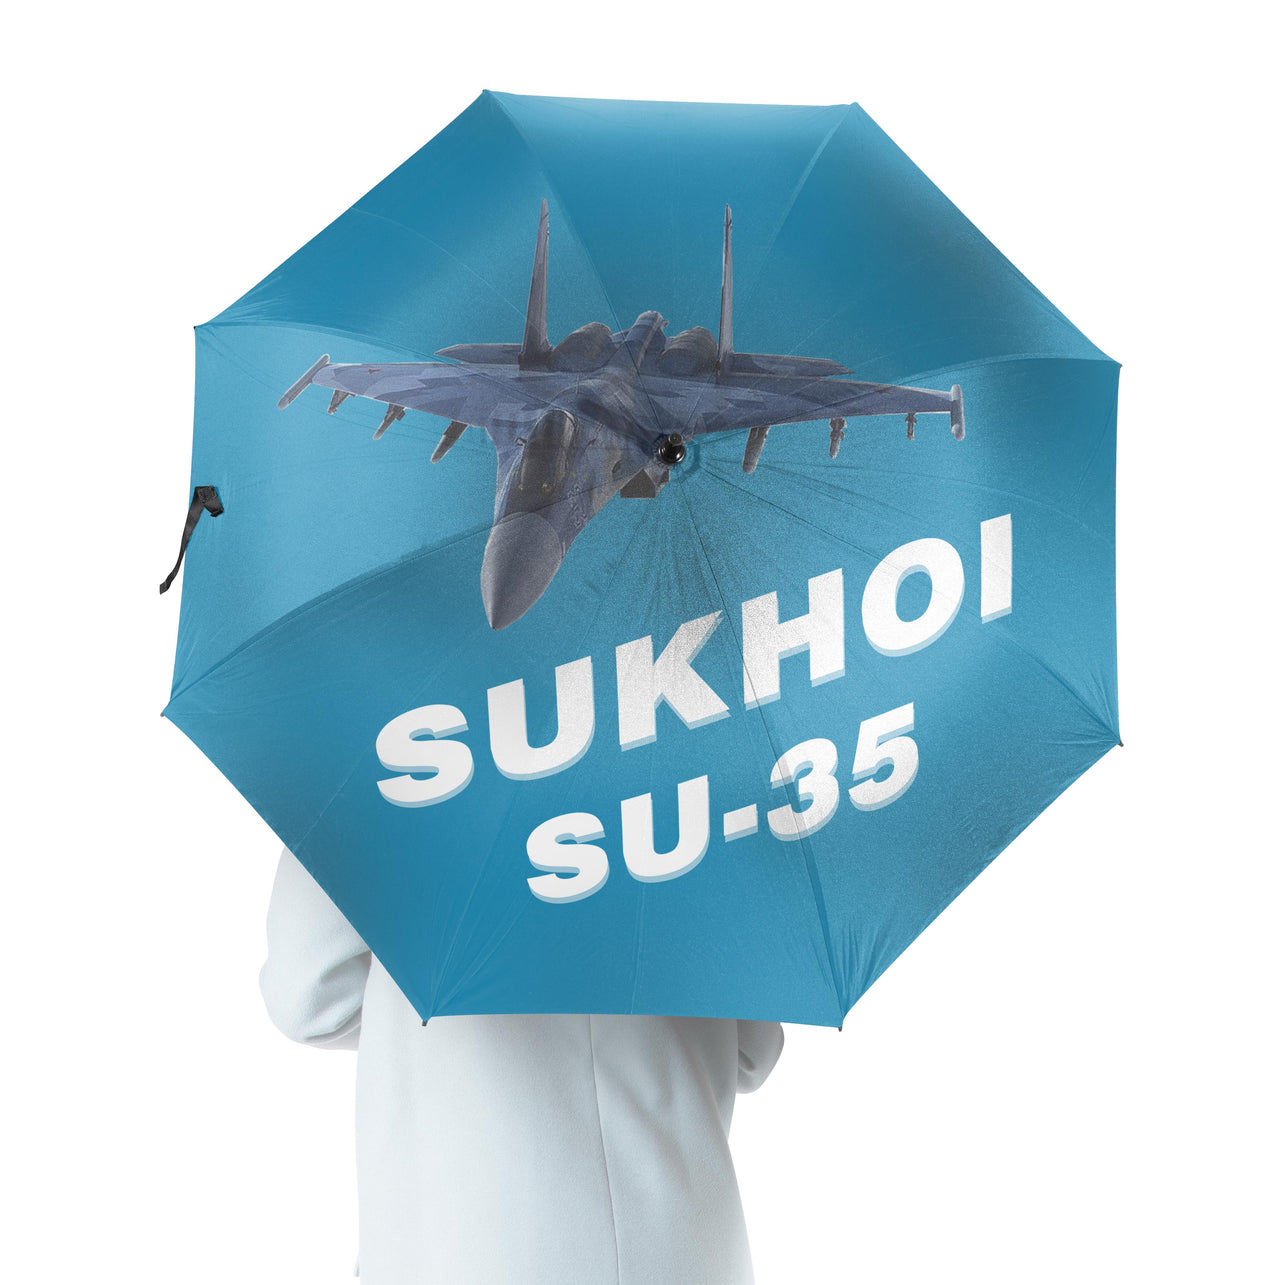 The Sukhoi SU-35 Designed Umbrella